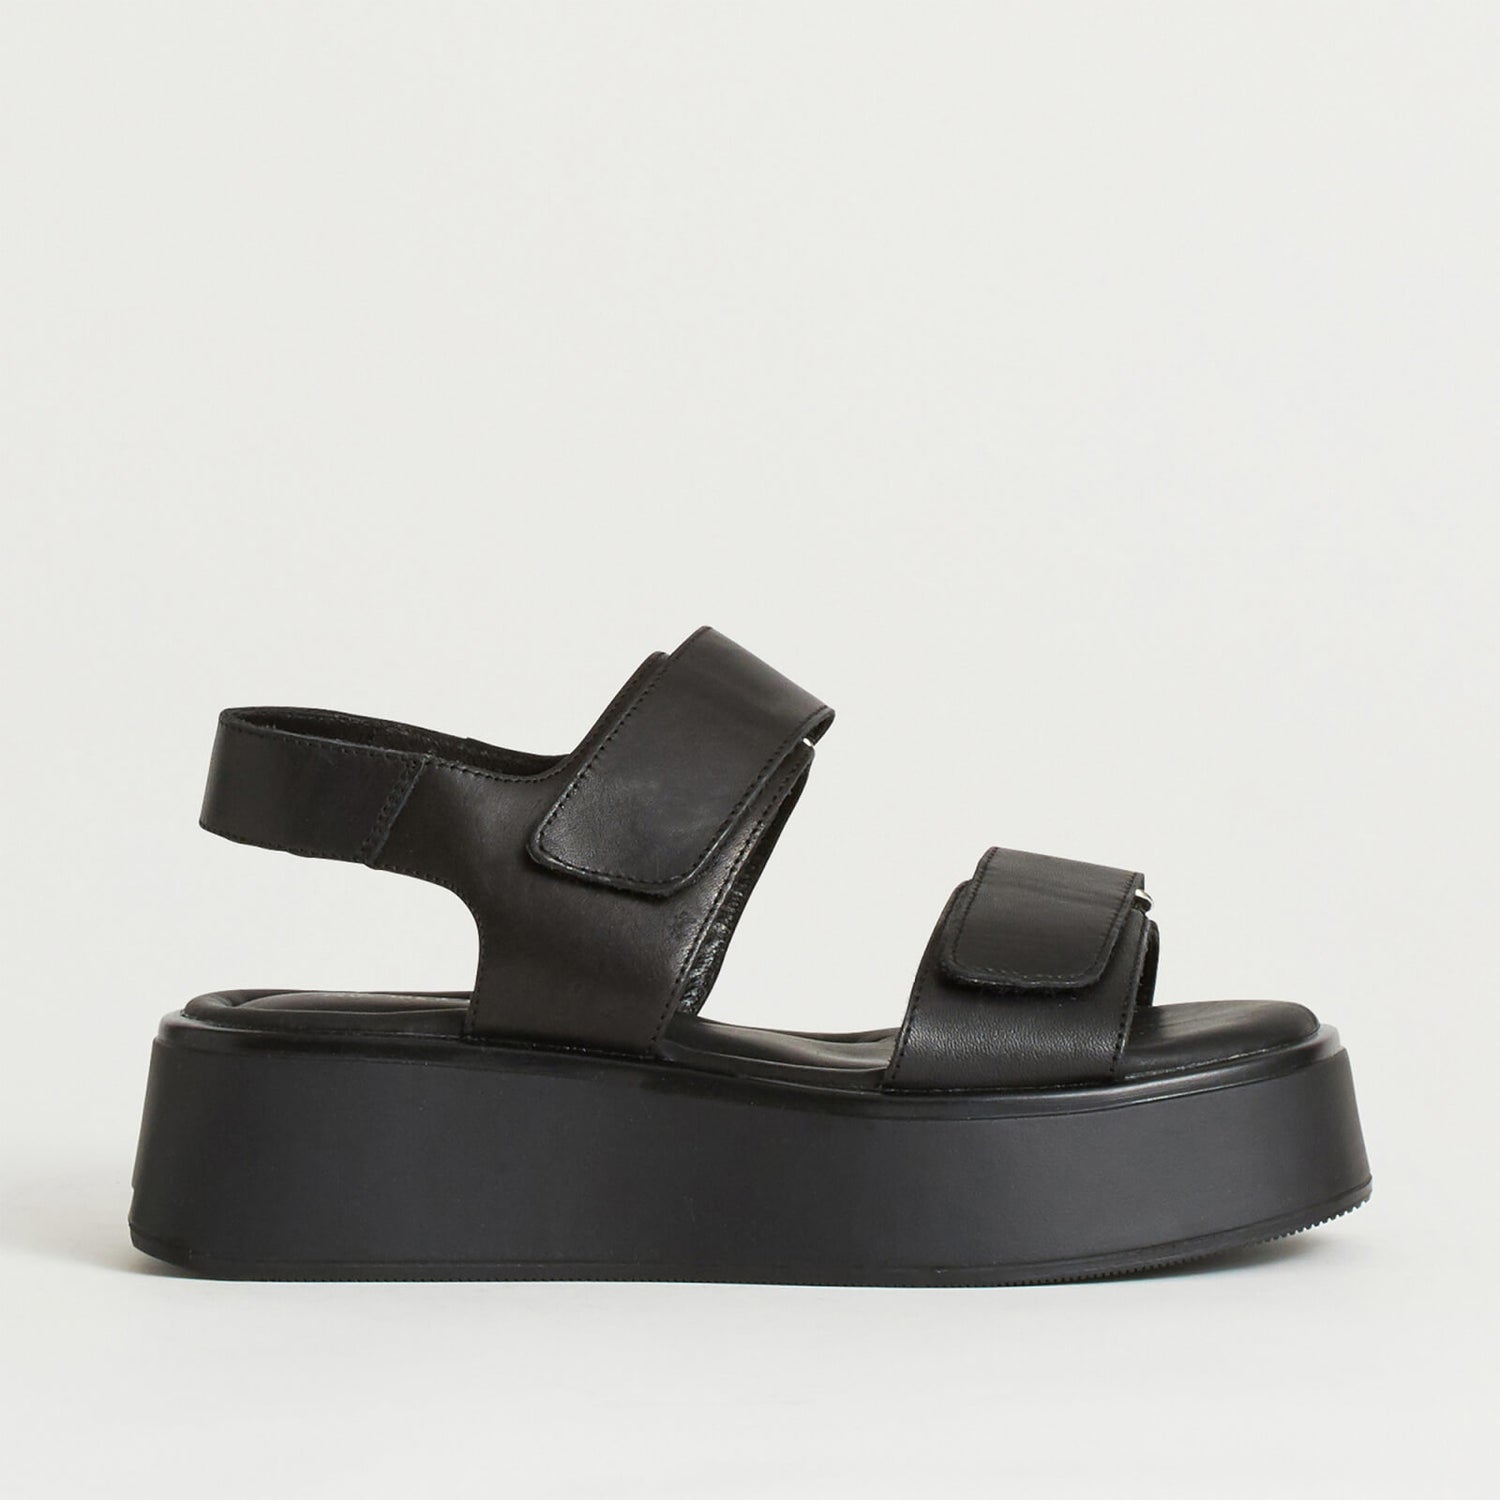 Vagabond Women's Courtney Leather Double Strap Sandals - Black/Black - UK 3